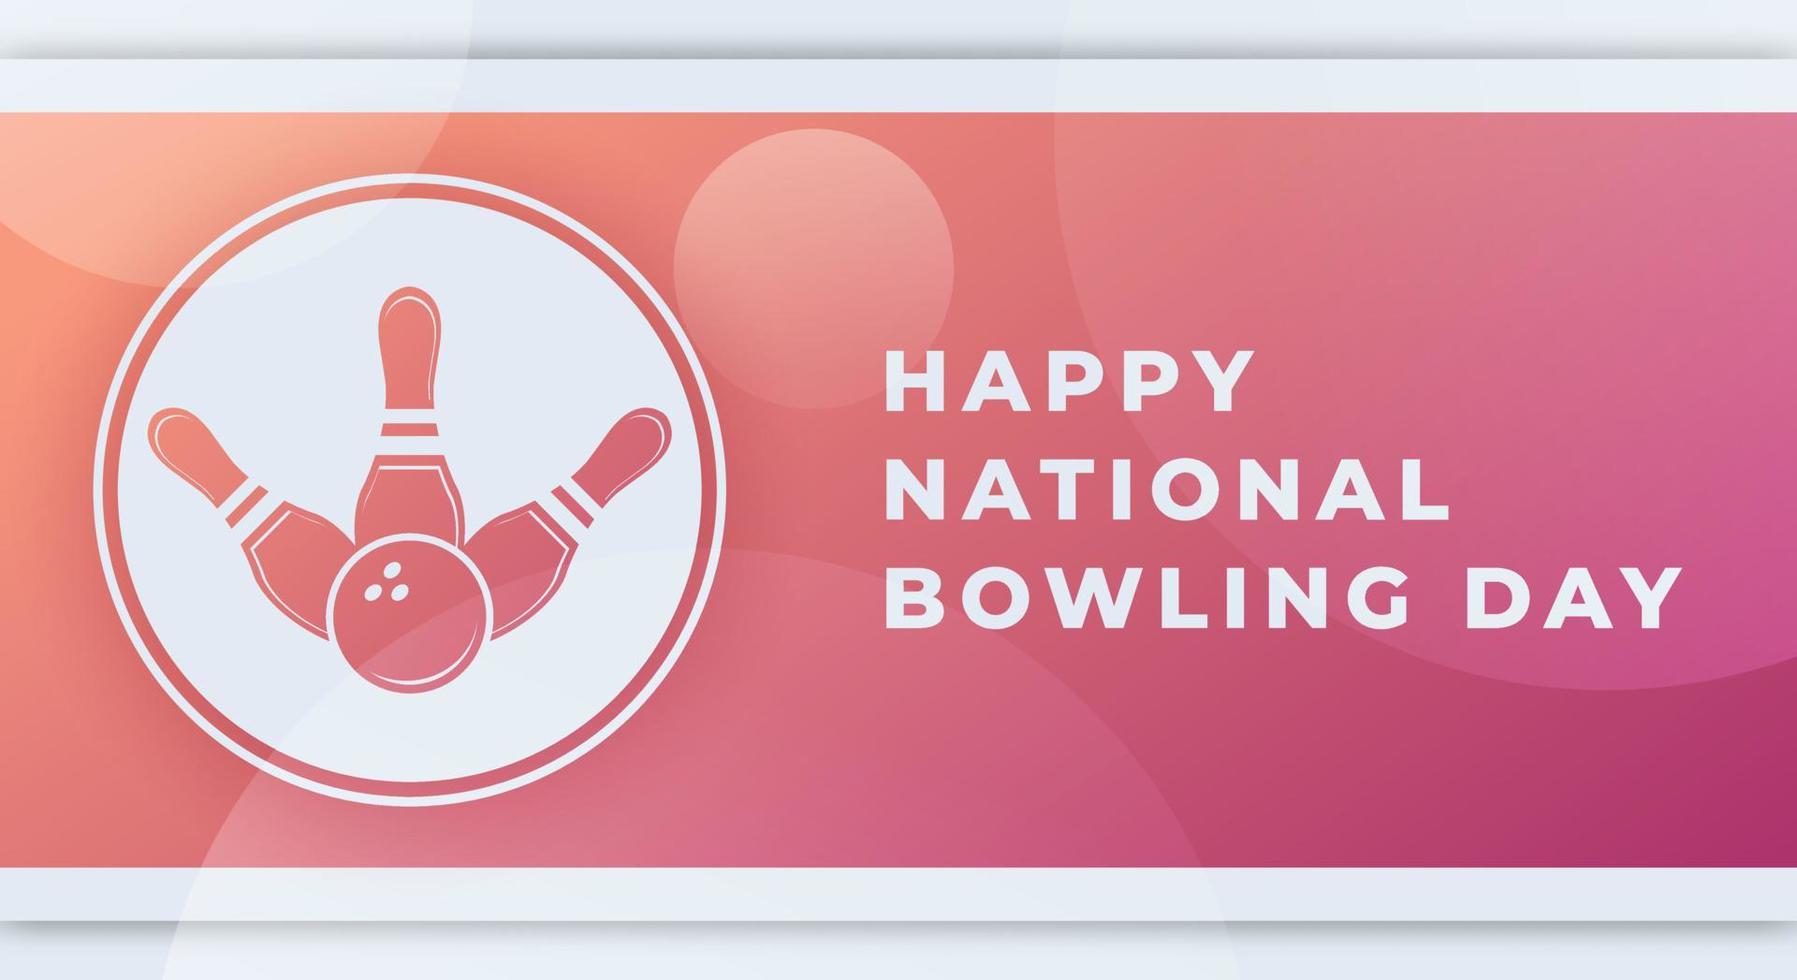 bonne journée nationale de bowling illustration de conception vectorielle de célébration d'août. modèle pour l'arrière-plan, l'affiche, la bannière, la publicité, la carte de voeux ou l'élément de conception d'impression vecteur